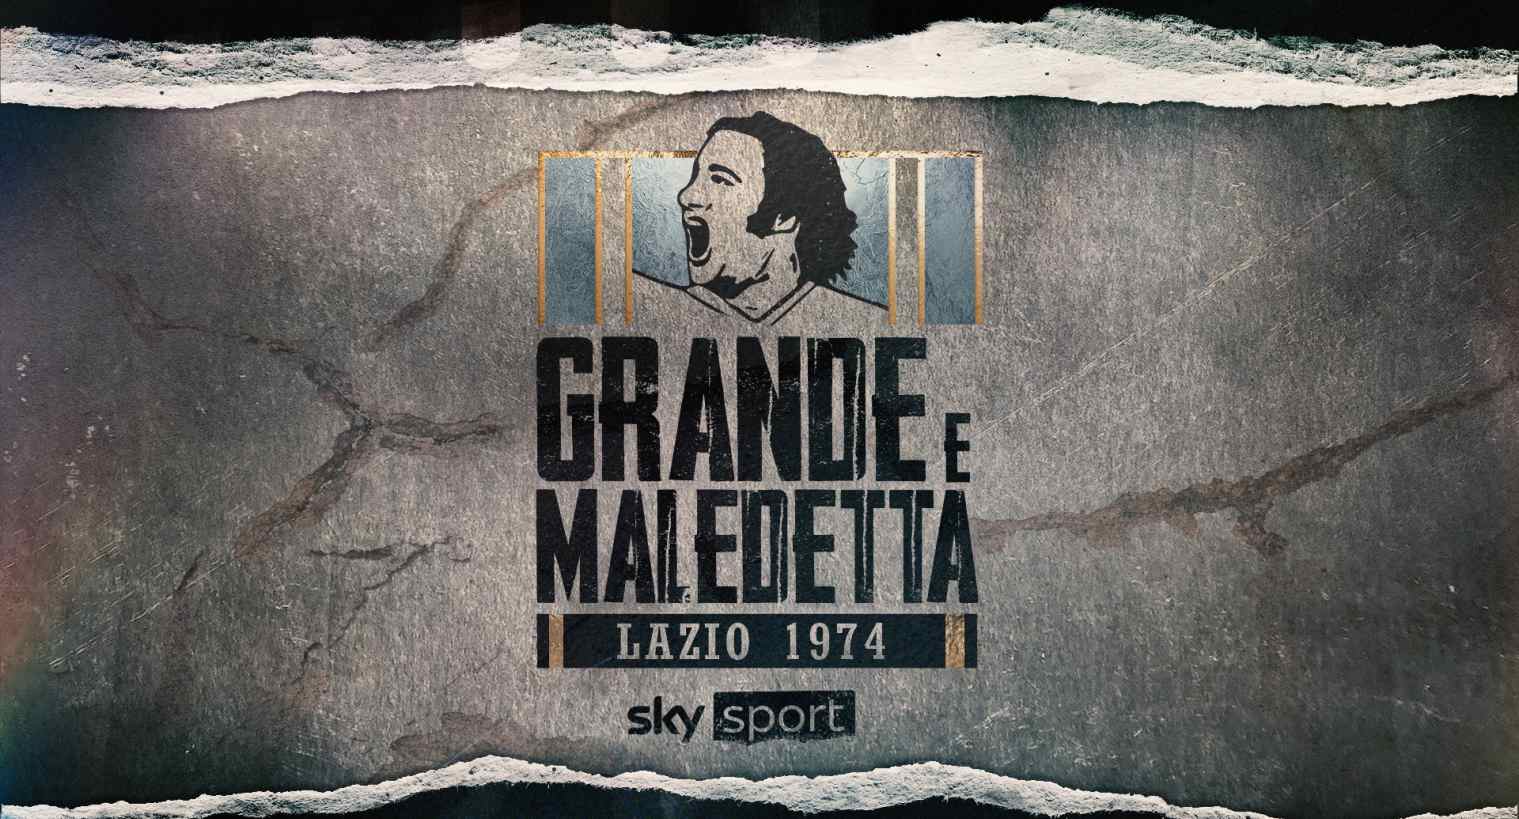 Sky Sport presenta 'Lazio 1974: grande e maledetta', storia epica calcio e controversie anni '70